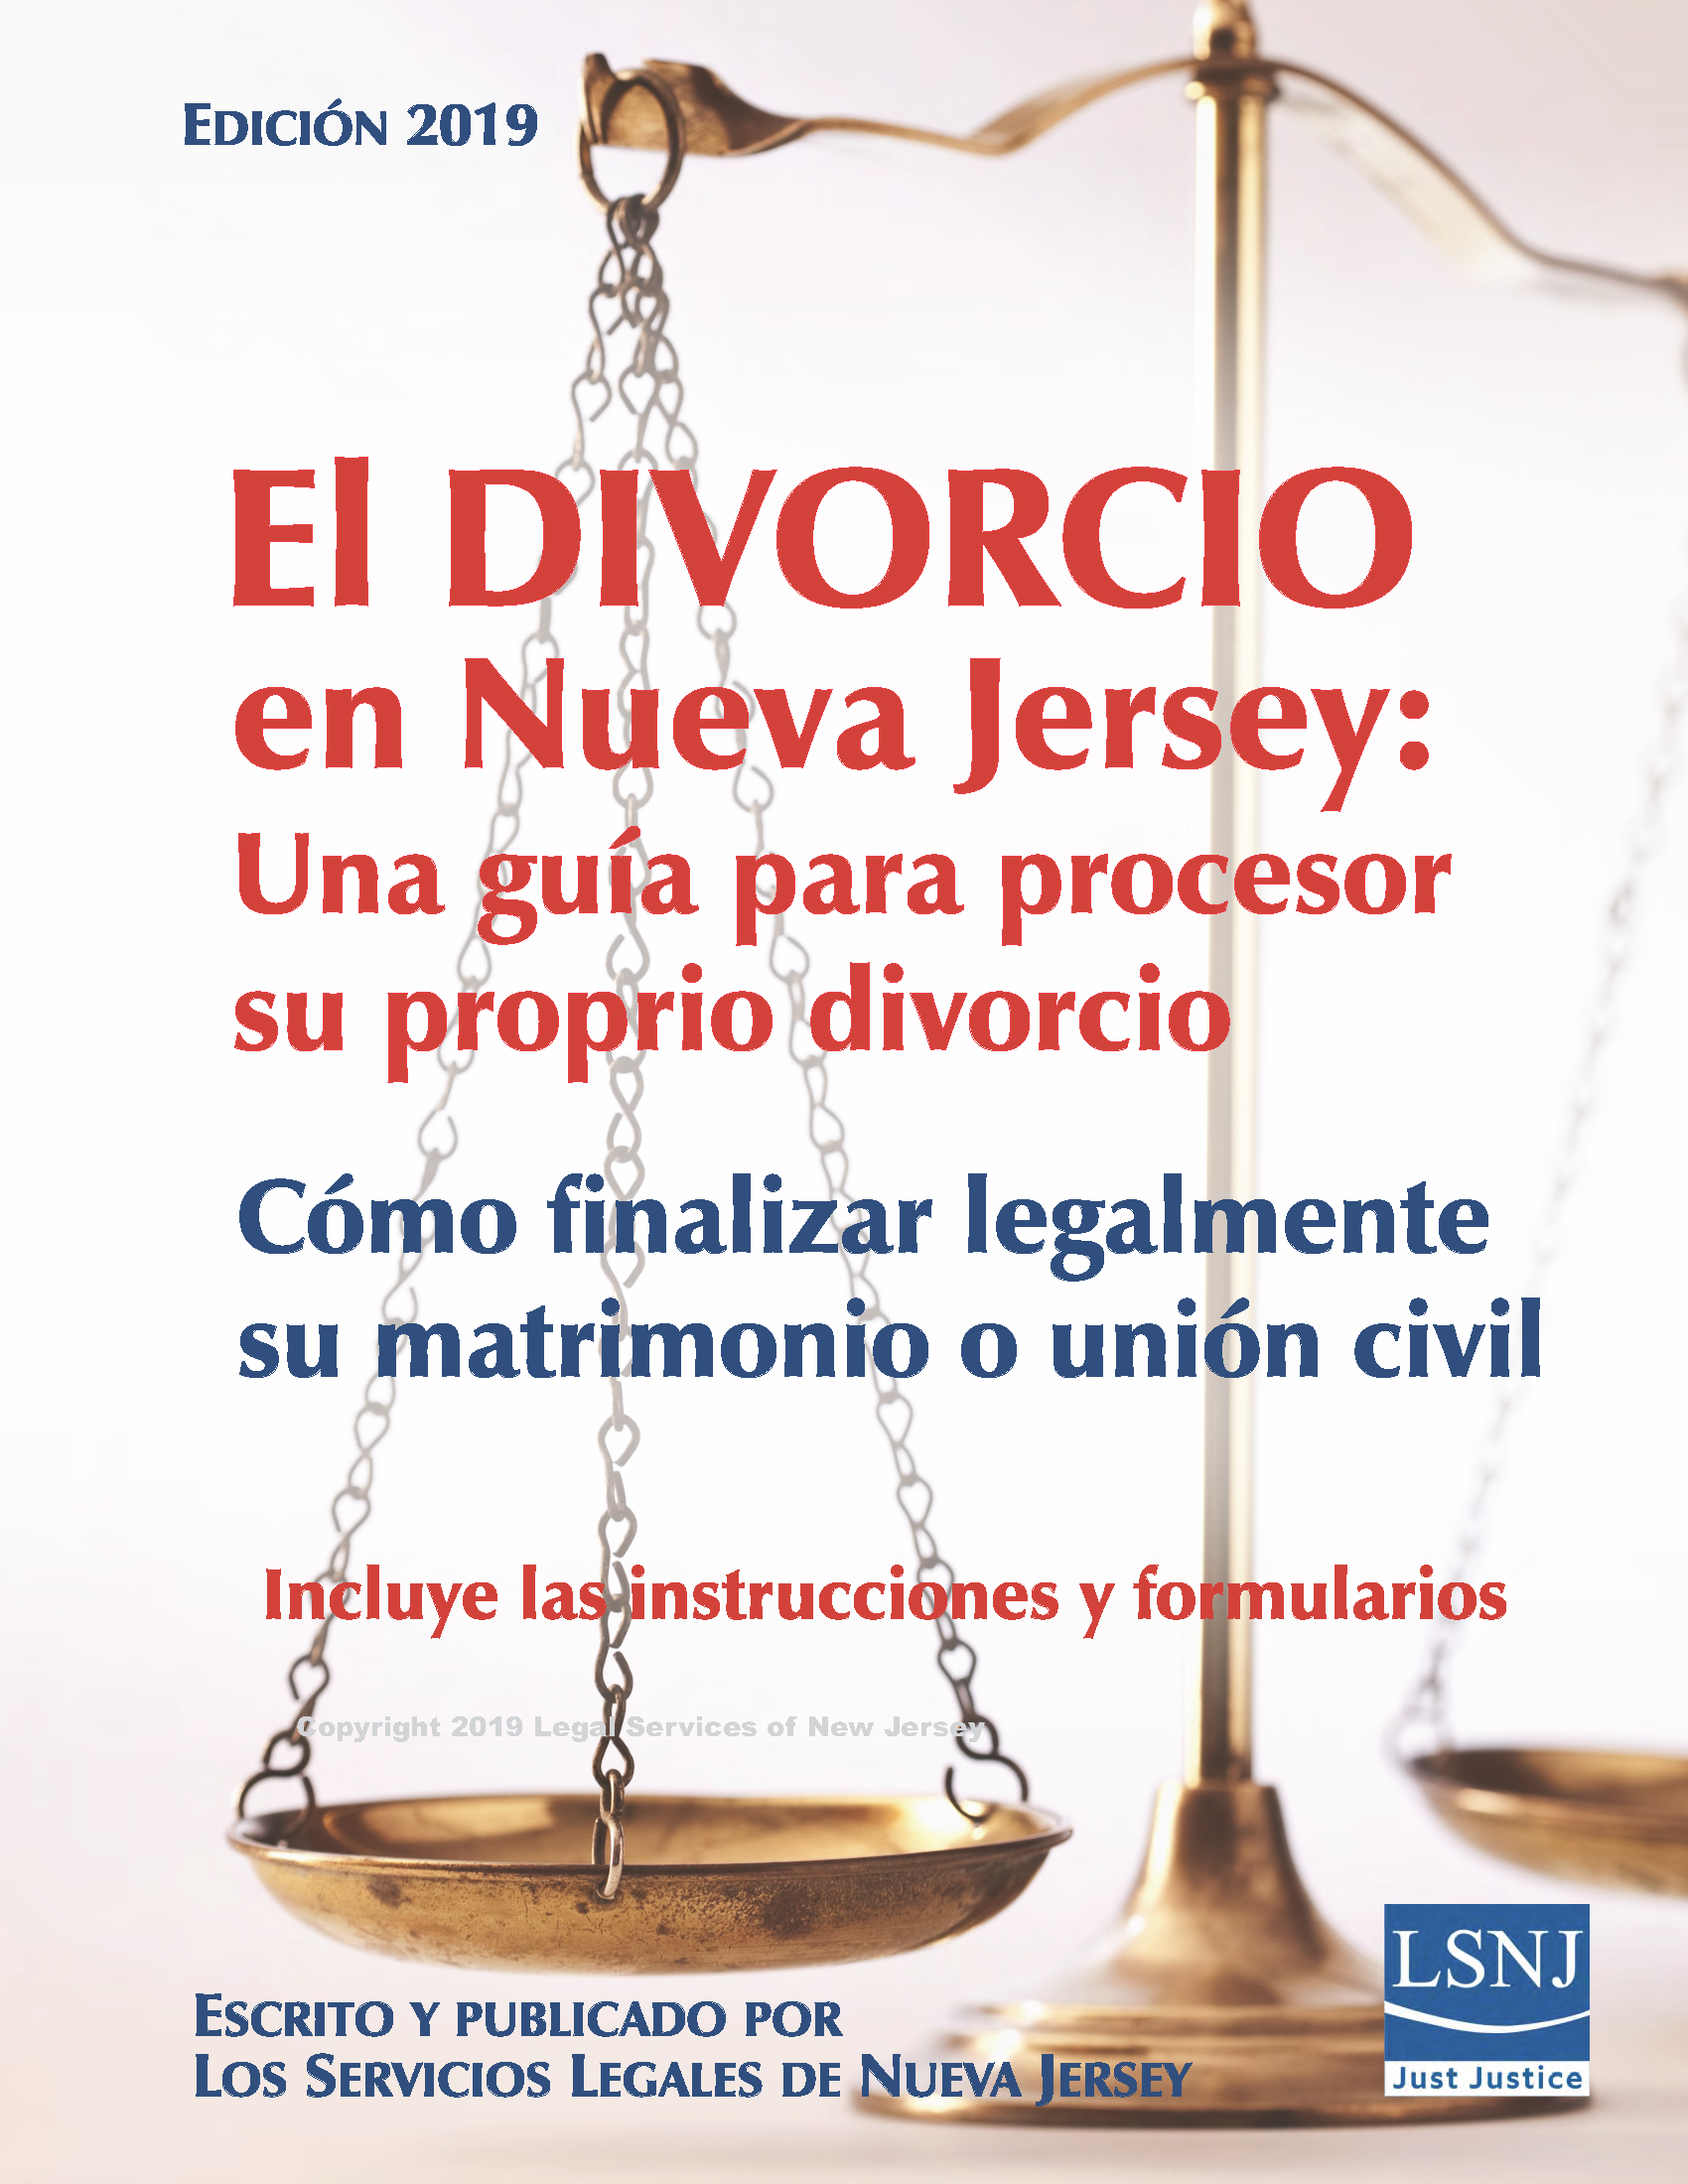 El divorcio en Nueva Jersey: La guía para procesar su propio